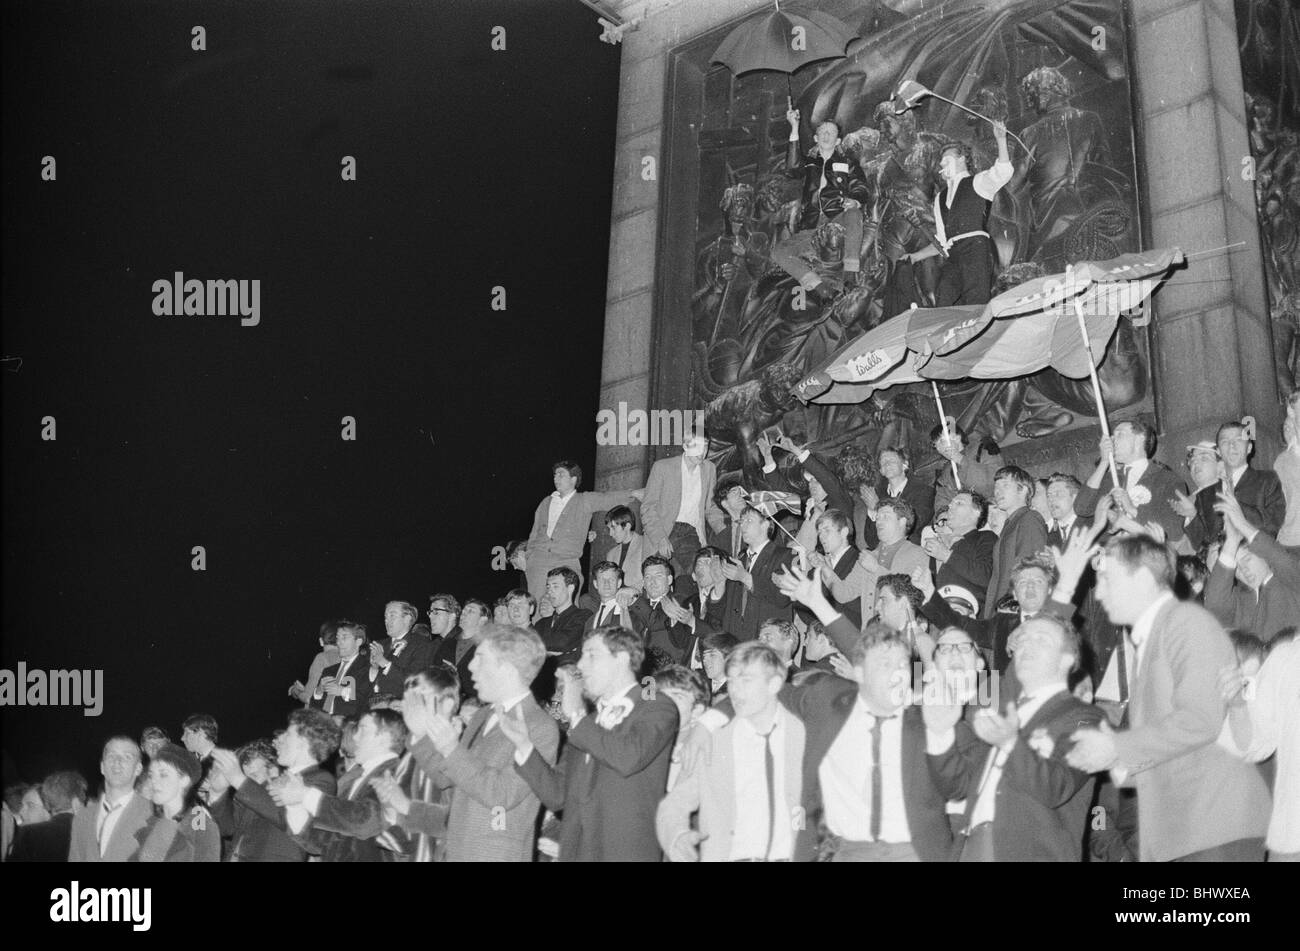 Torneo de la Copa Mundial de 1966 en Inglaterra. Inglaterra fans celebran en Trafalgar Square en Londres a la 1am en la noche de Inglaterra de la histórica victoria sobre Alemania en la final de la Copa del Mundo en Wembley. El 1 de agosto de 1966. Foto de stock